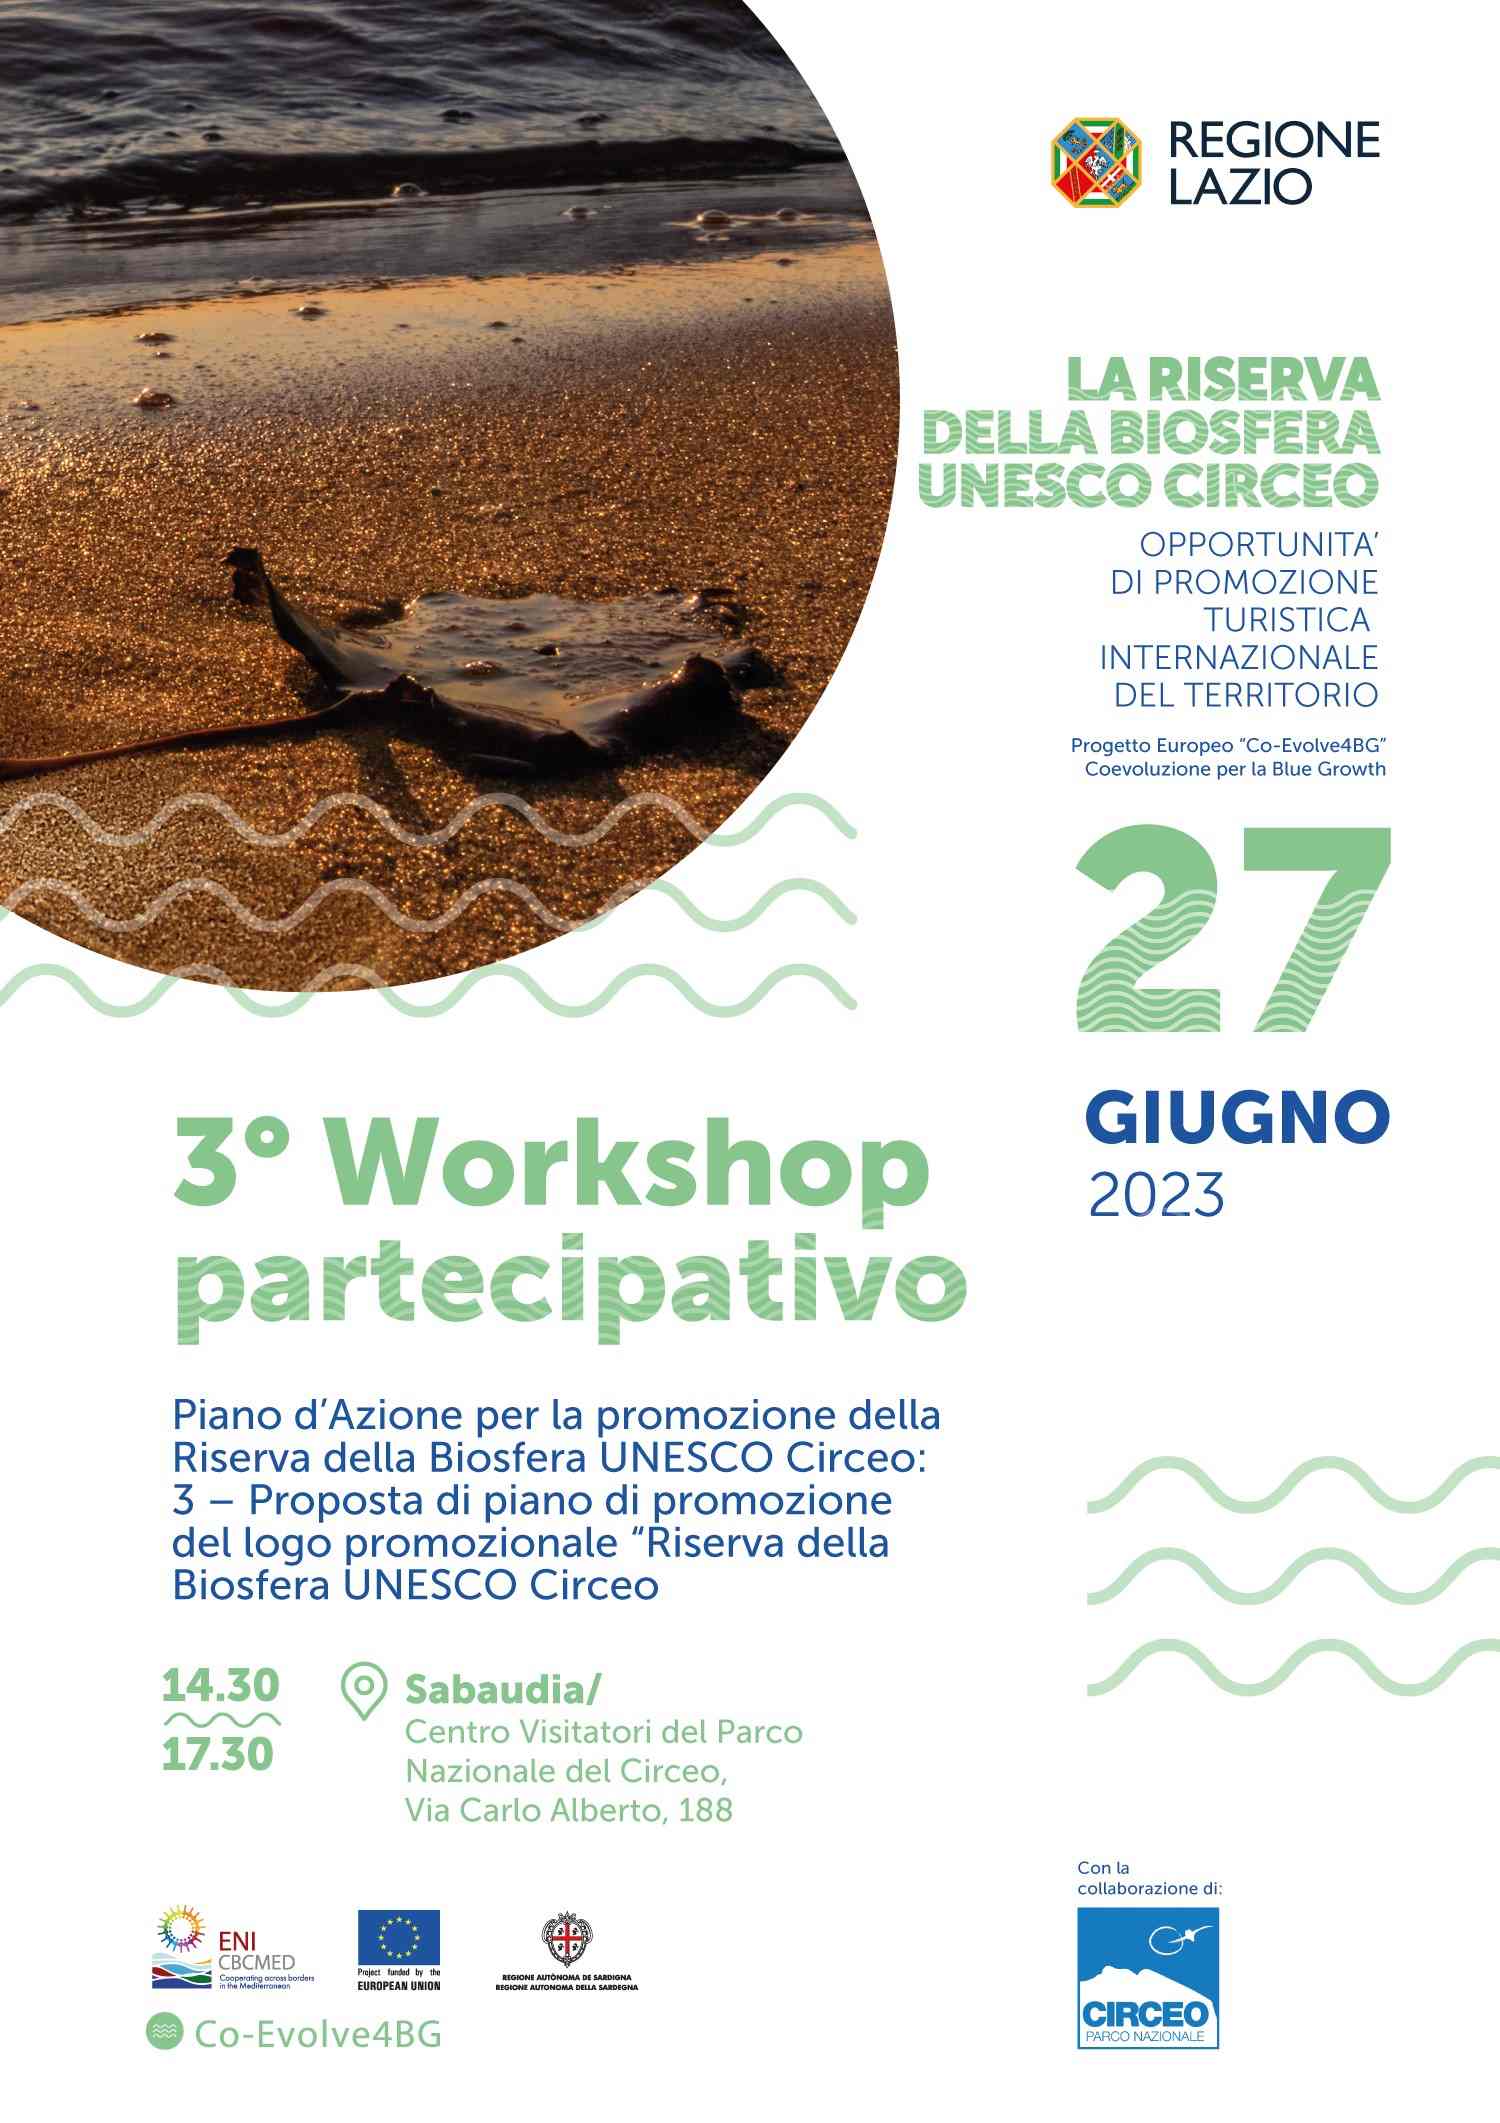 3° Workshop partecipativo “Piano d’Azione per la promozione della Riserva della Biosfera UNESCO Circeo'